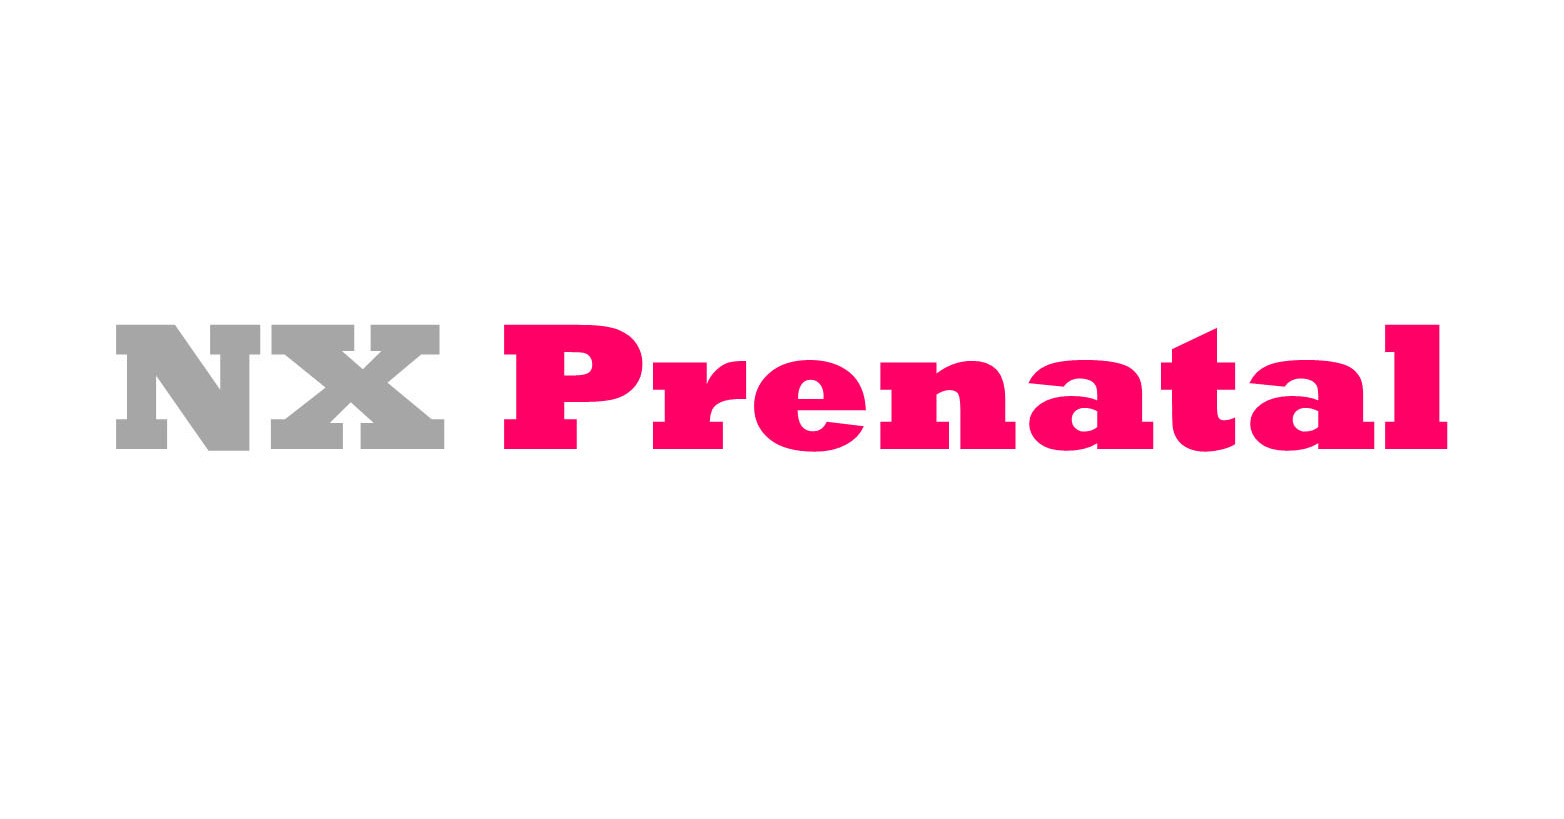 NX Prenatal